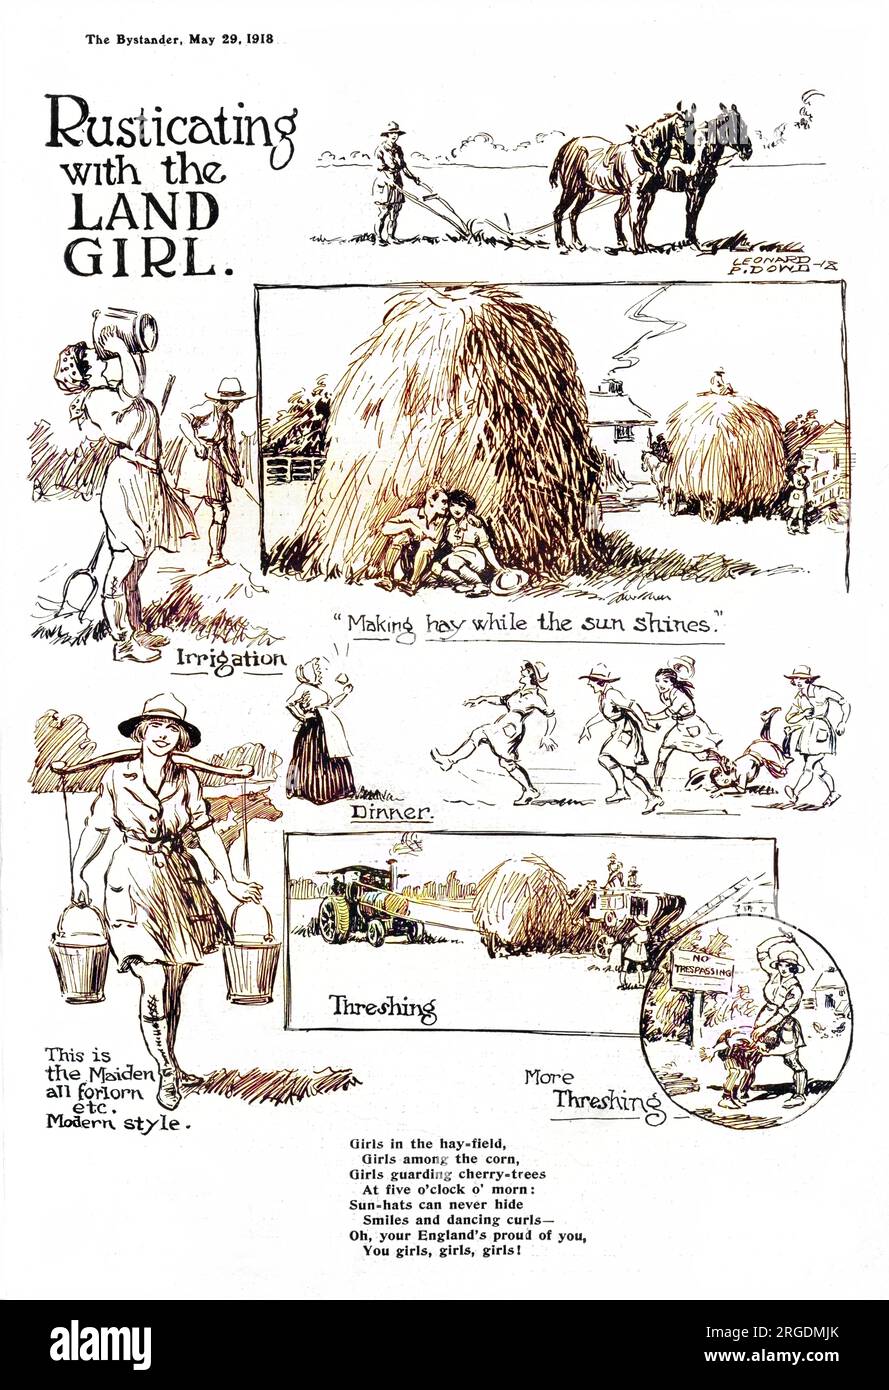 Una página de bocetos que muestran varias actividades del Ejército de Tierra de las Mujeres durante la Primera Guerra Mundial, incluyendo arado, trilla, ordeño, así como correr para cenar y disfrutar de un breve romance de un heno rick. Foto de stock